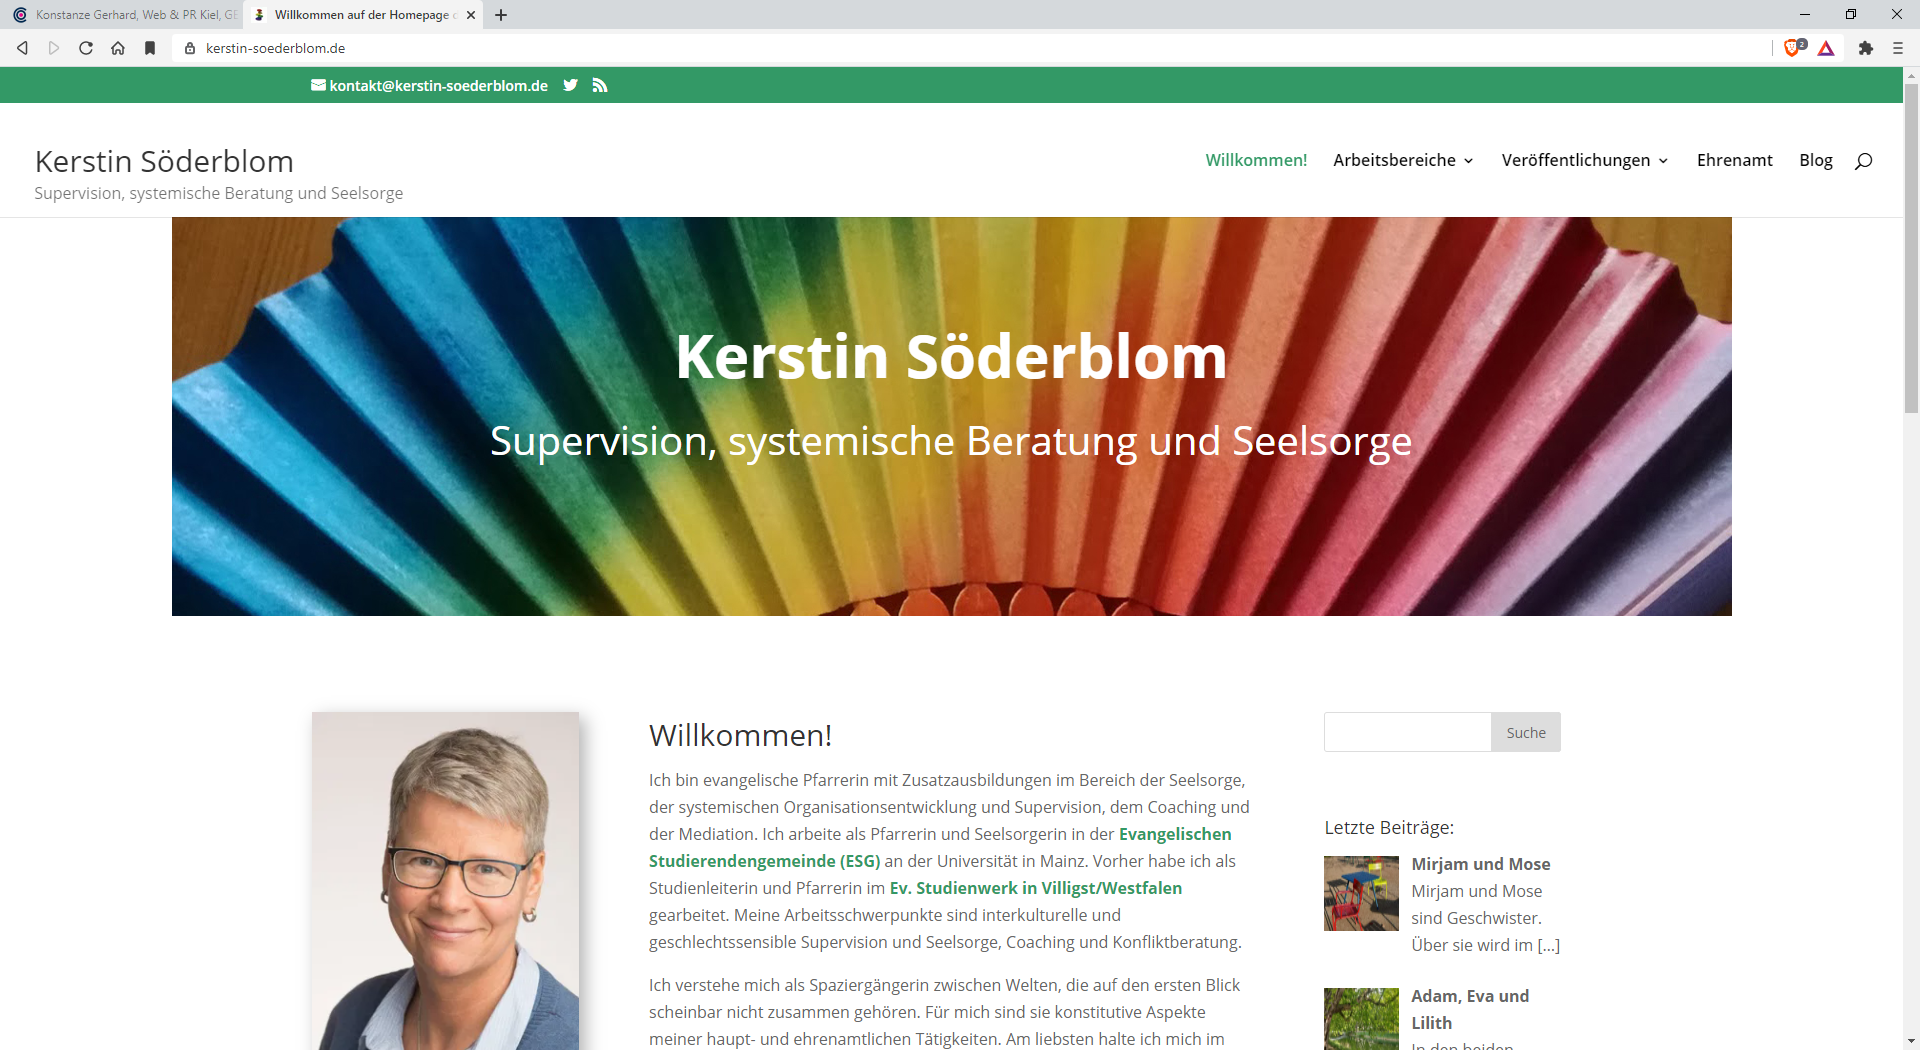 Kerstin Söderblom Supervision, systemische Beratung und Seelsorge